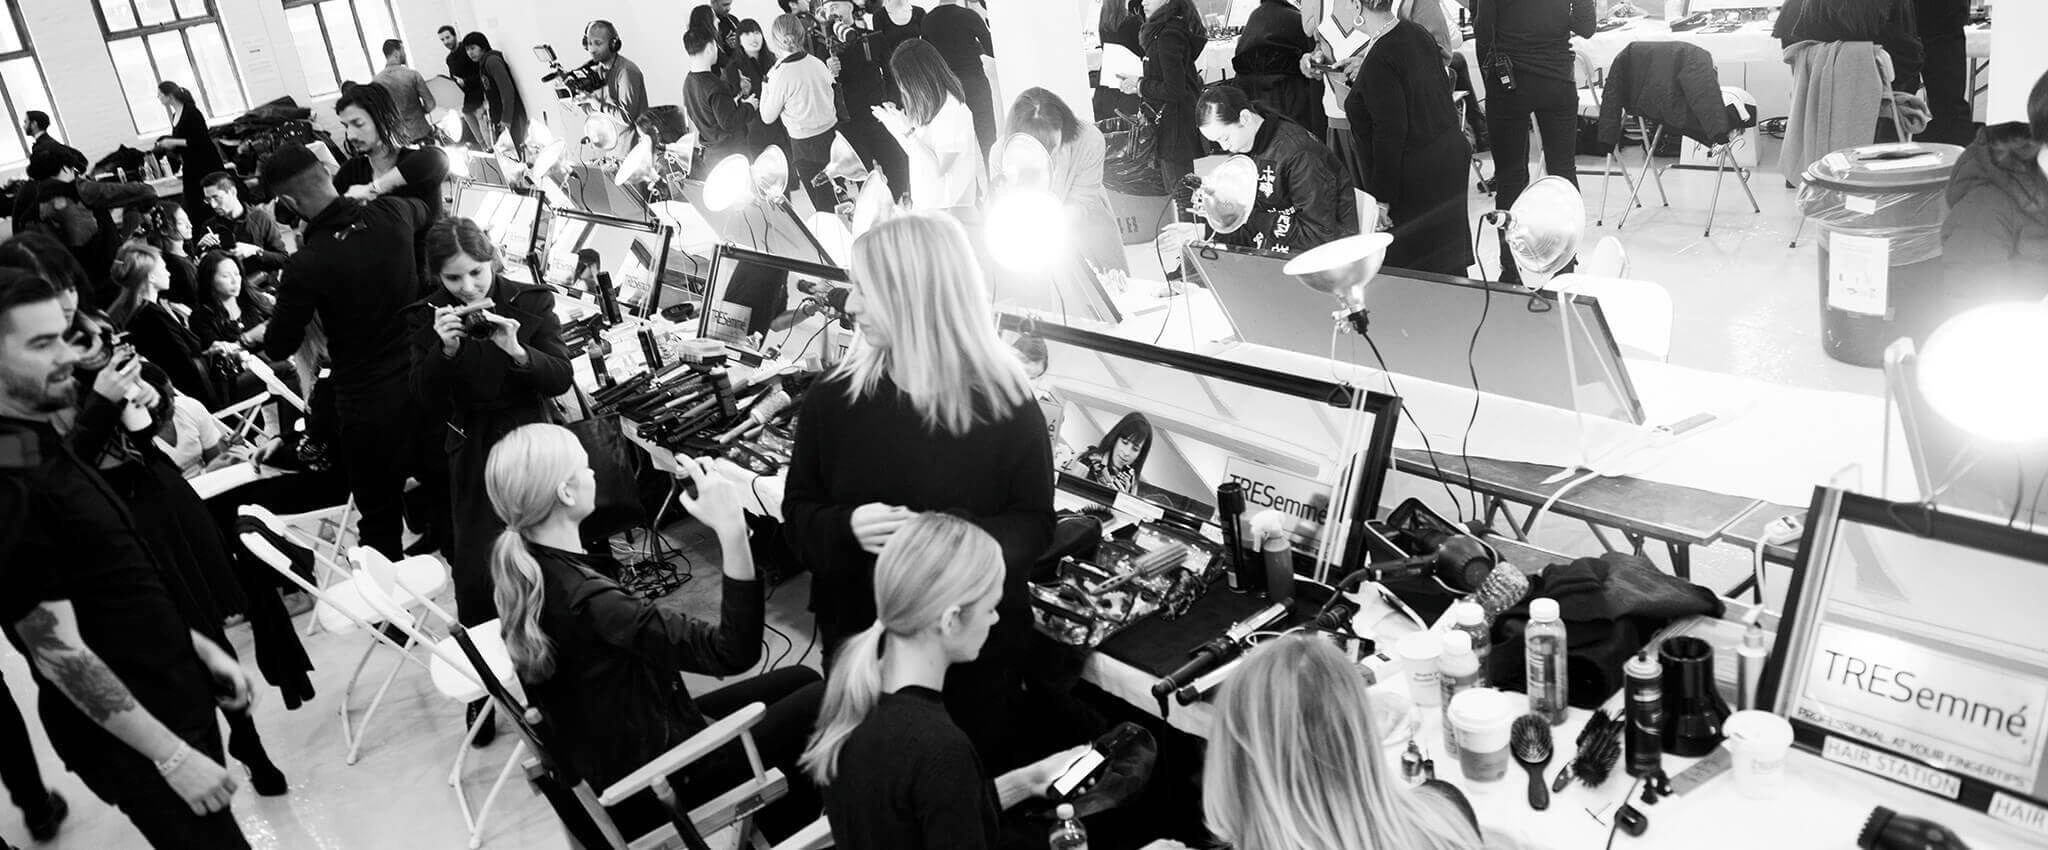 Detrás de la escena en un desfile de modas. La habitación vibra llena de modelos, estilistas, fotógrafos, herramientas de peinado y productos para el cabello.